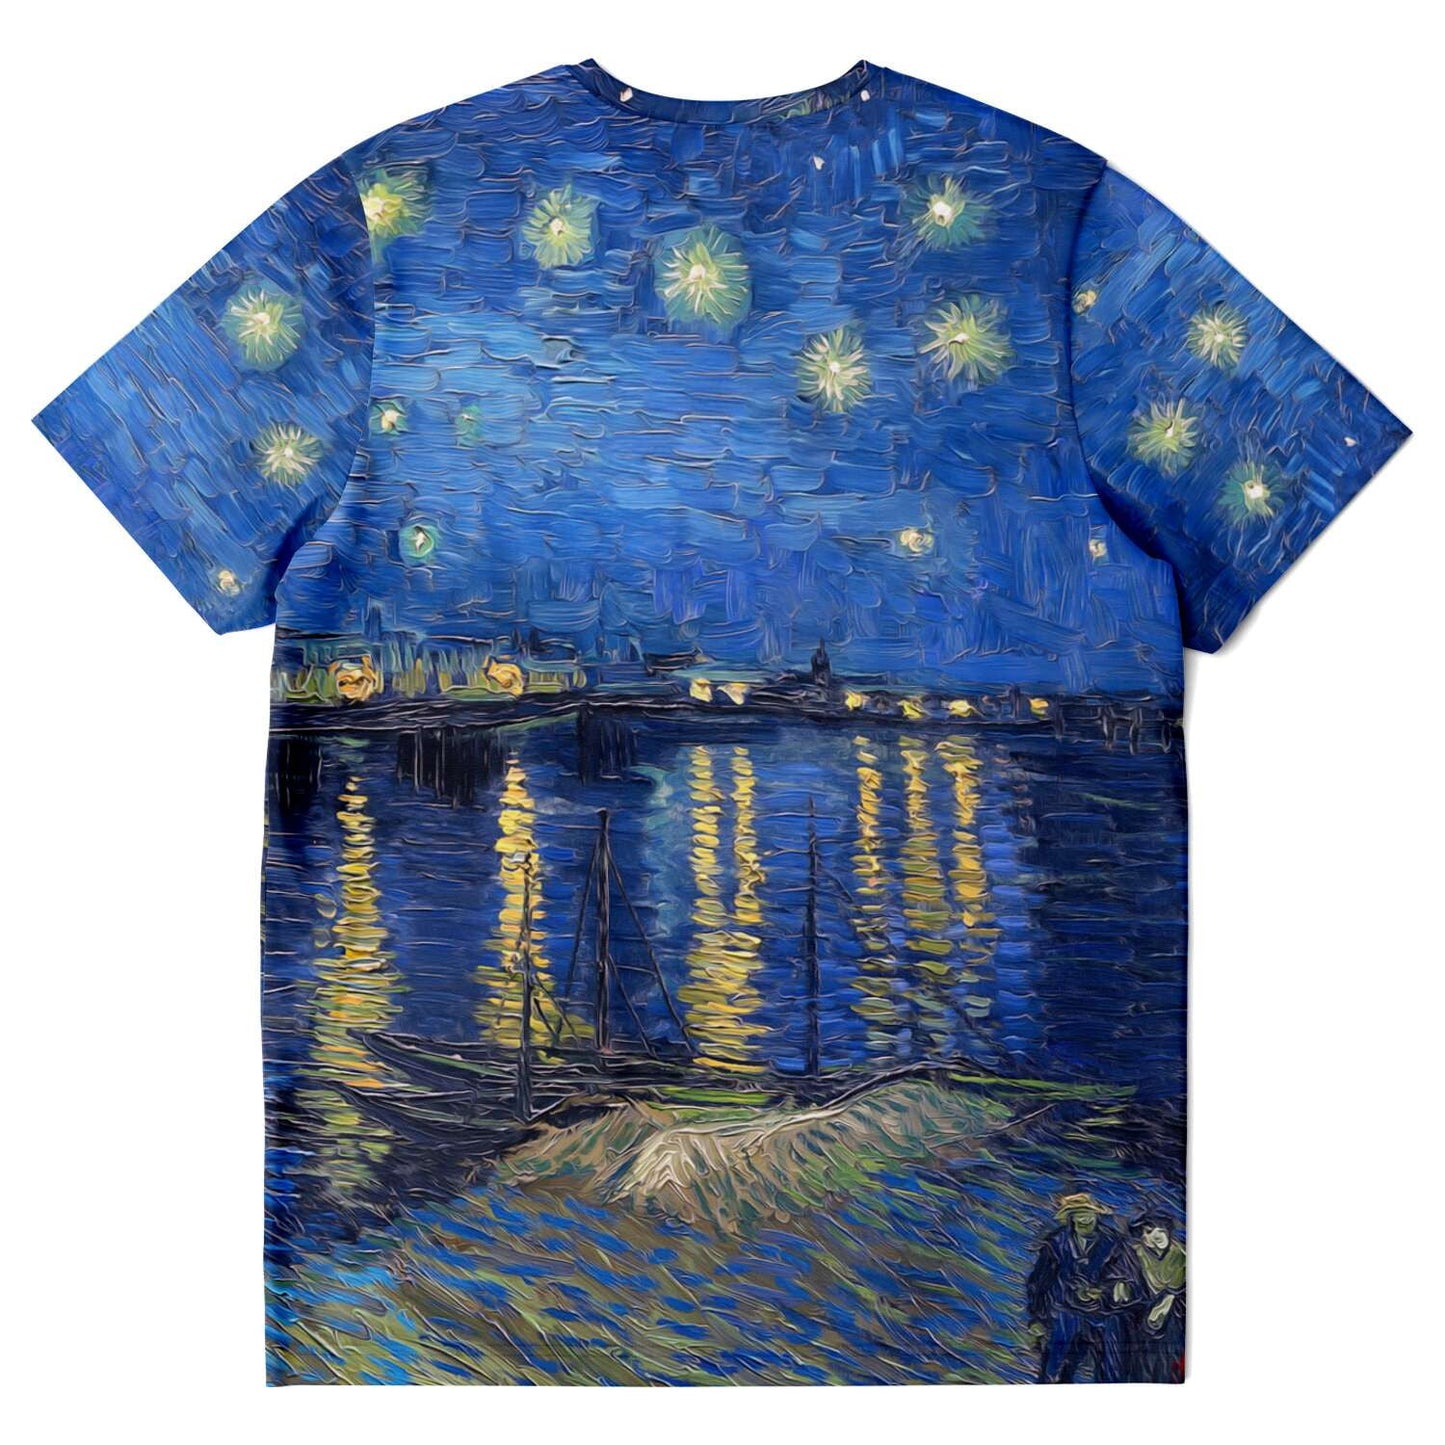 Camiseta Noche estrellada sobre el Ródano